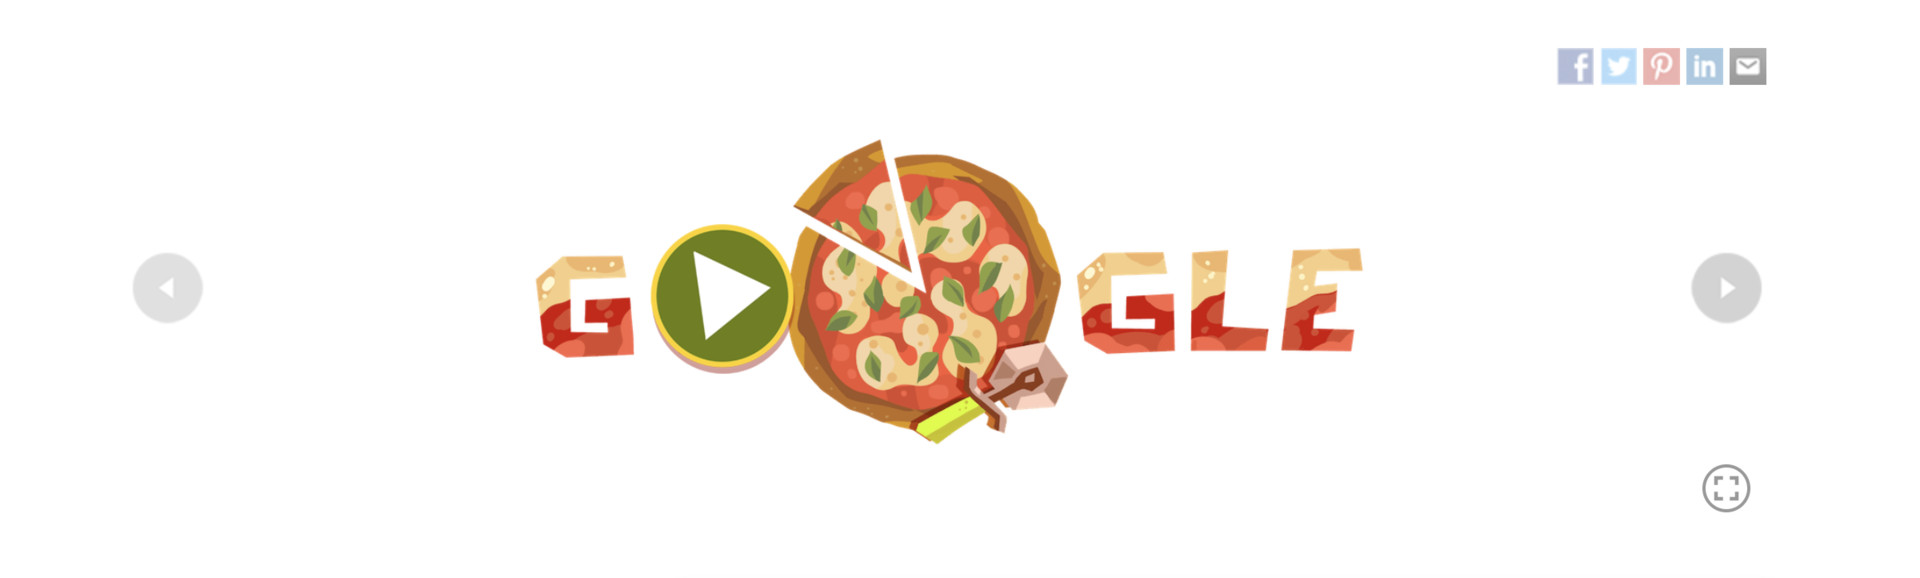 google doodle pizza